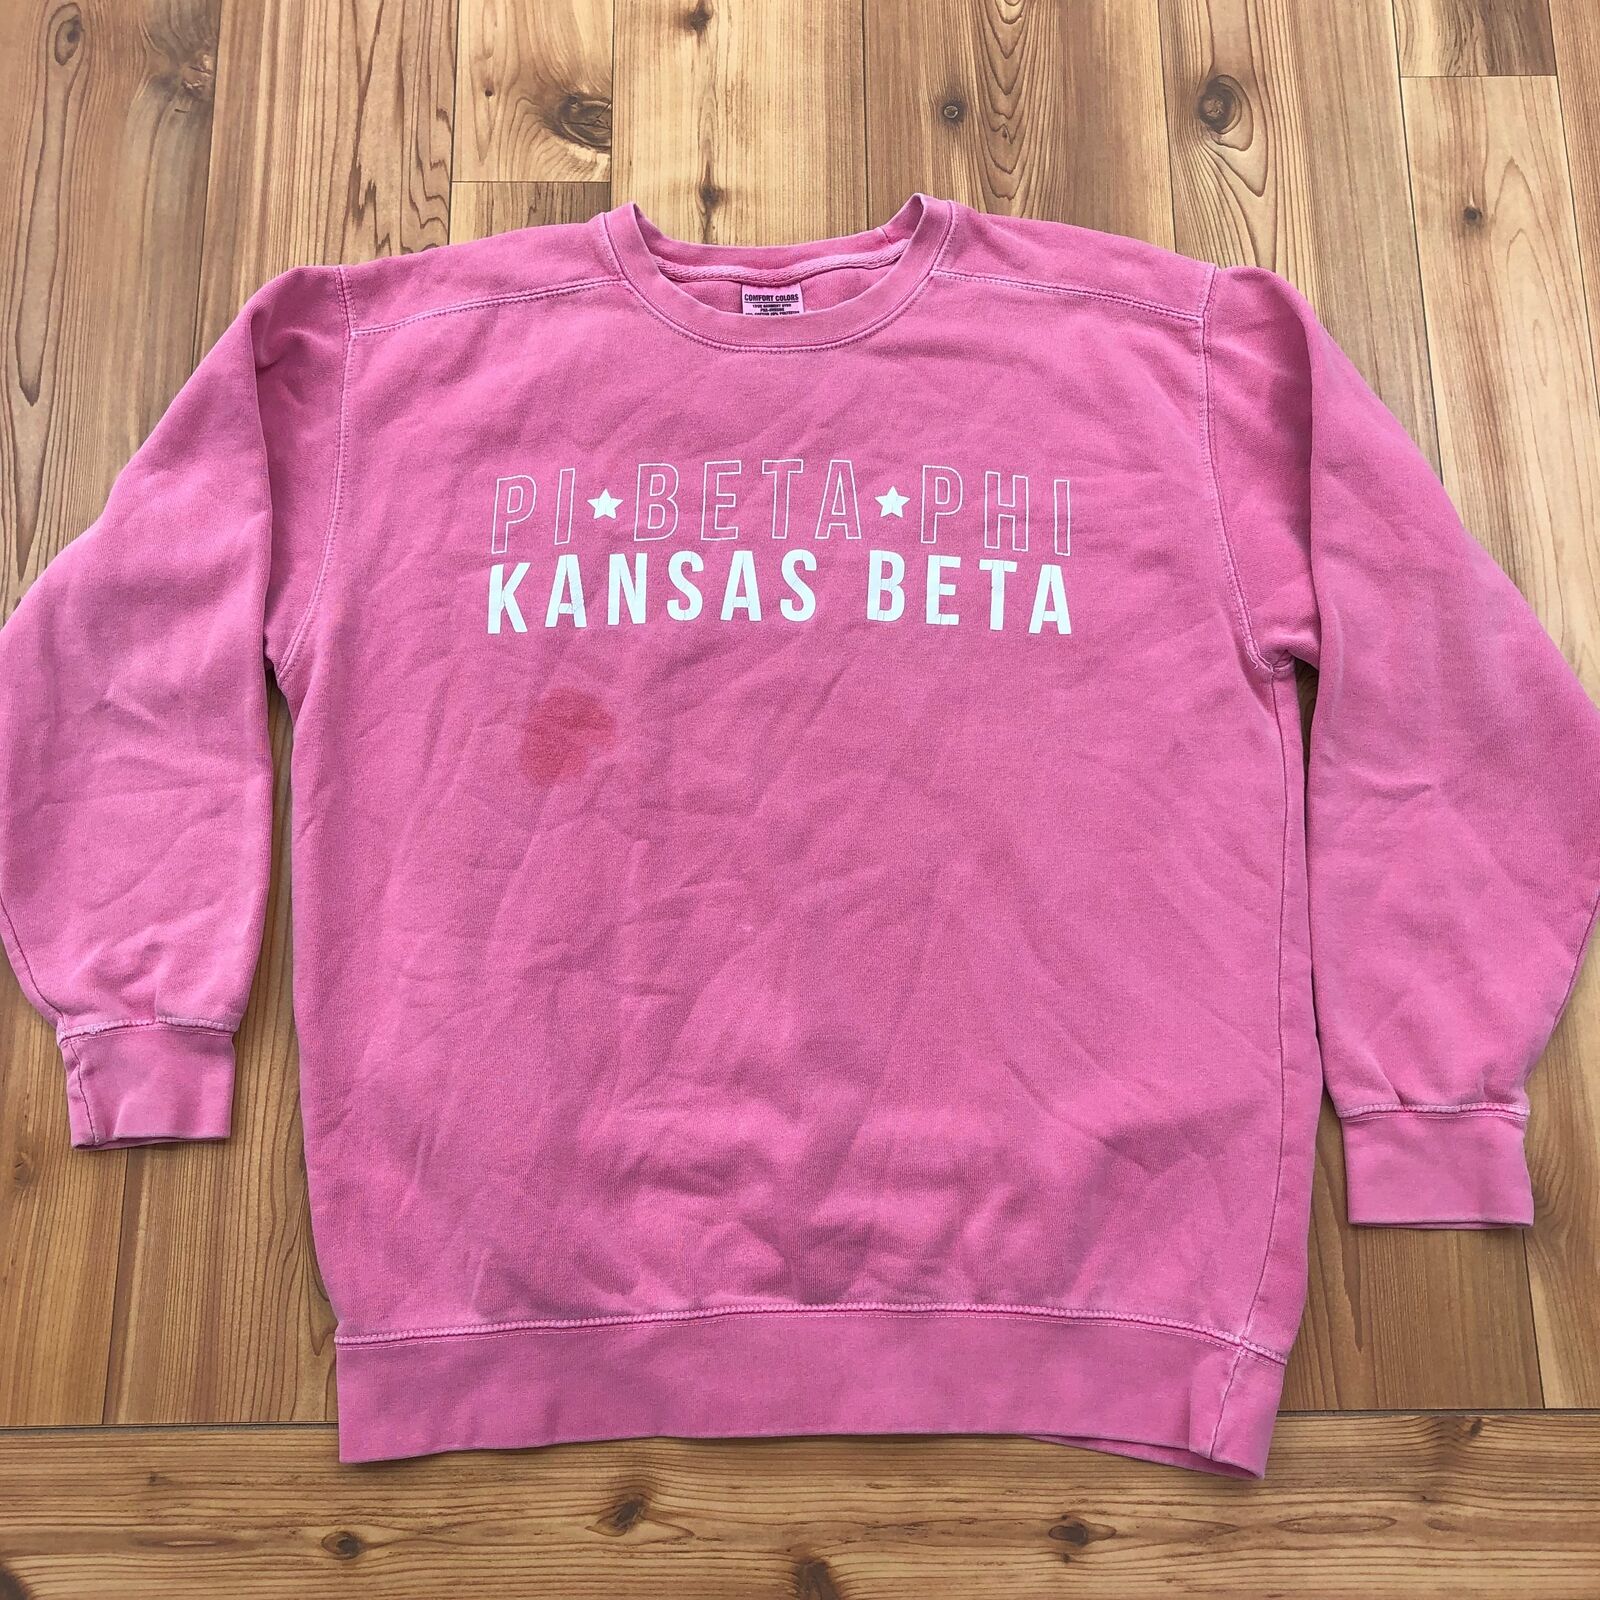 University Tees Pink "Pi Beta Phi Kansas Beta" Sw… - image 1